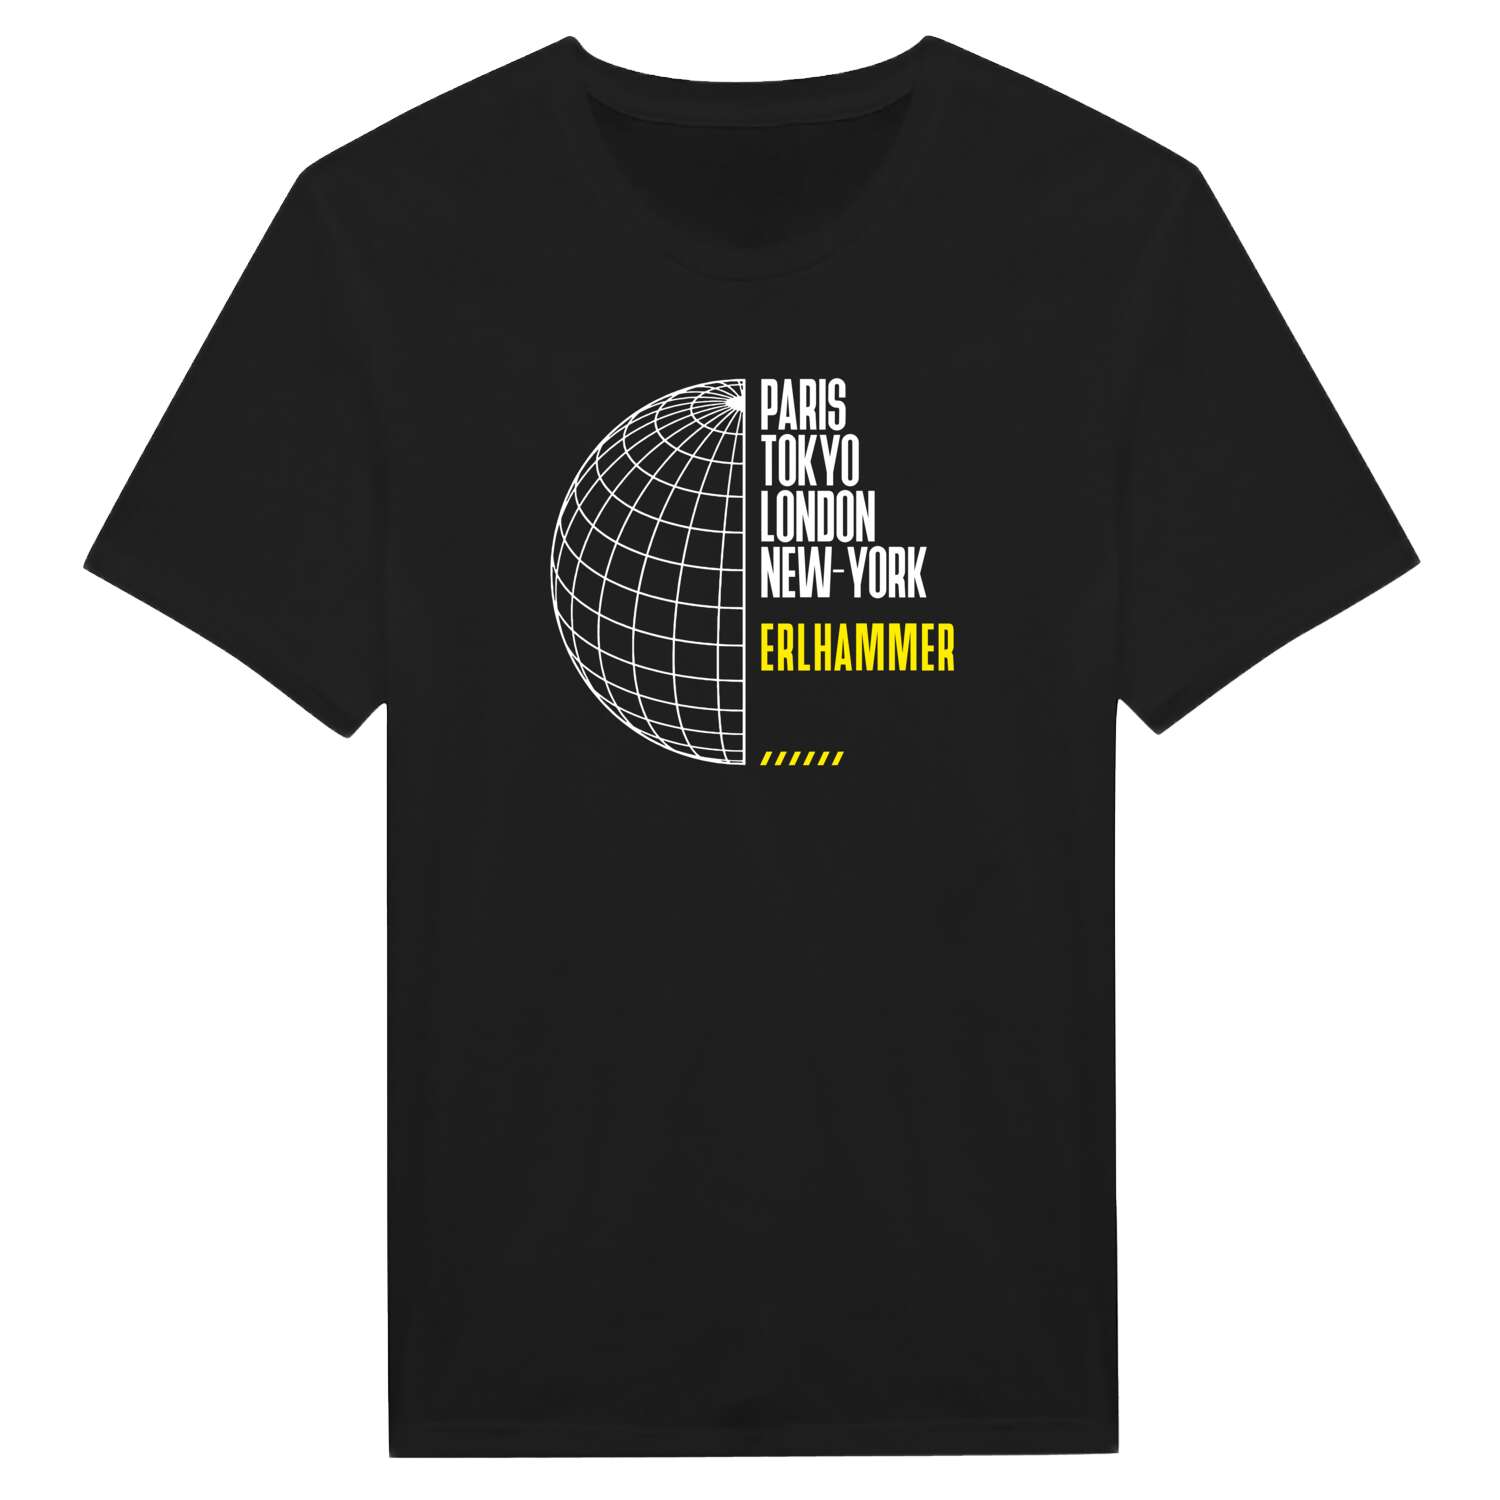 Erlhammer T-Shirt »Paris Tokyo London«